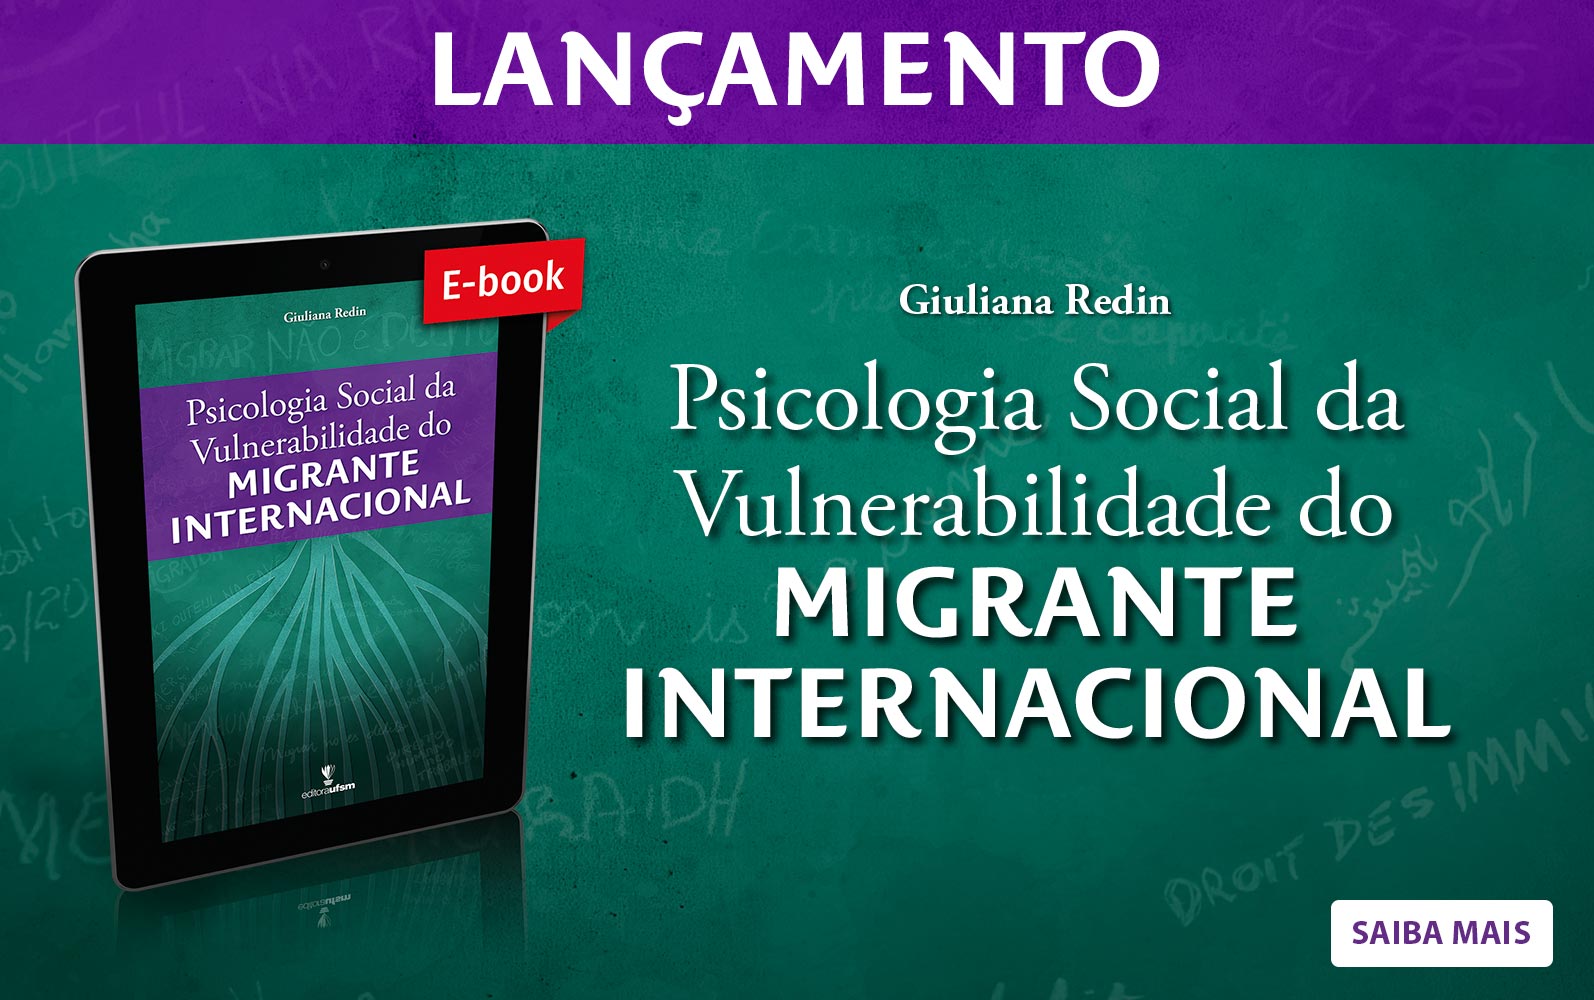 Saiba mais sobre o ebook Psicologia social da vulnerabilidade do migrante internacional